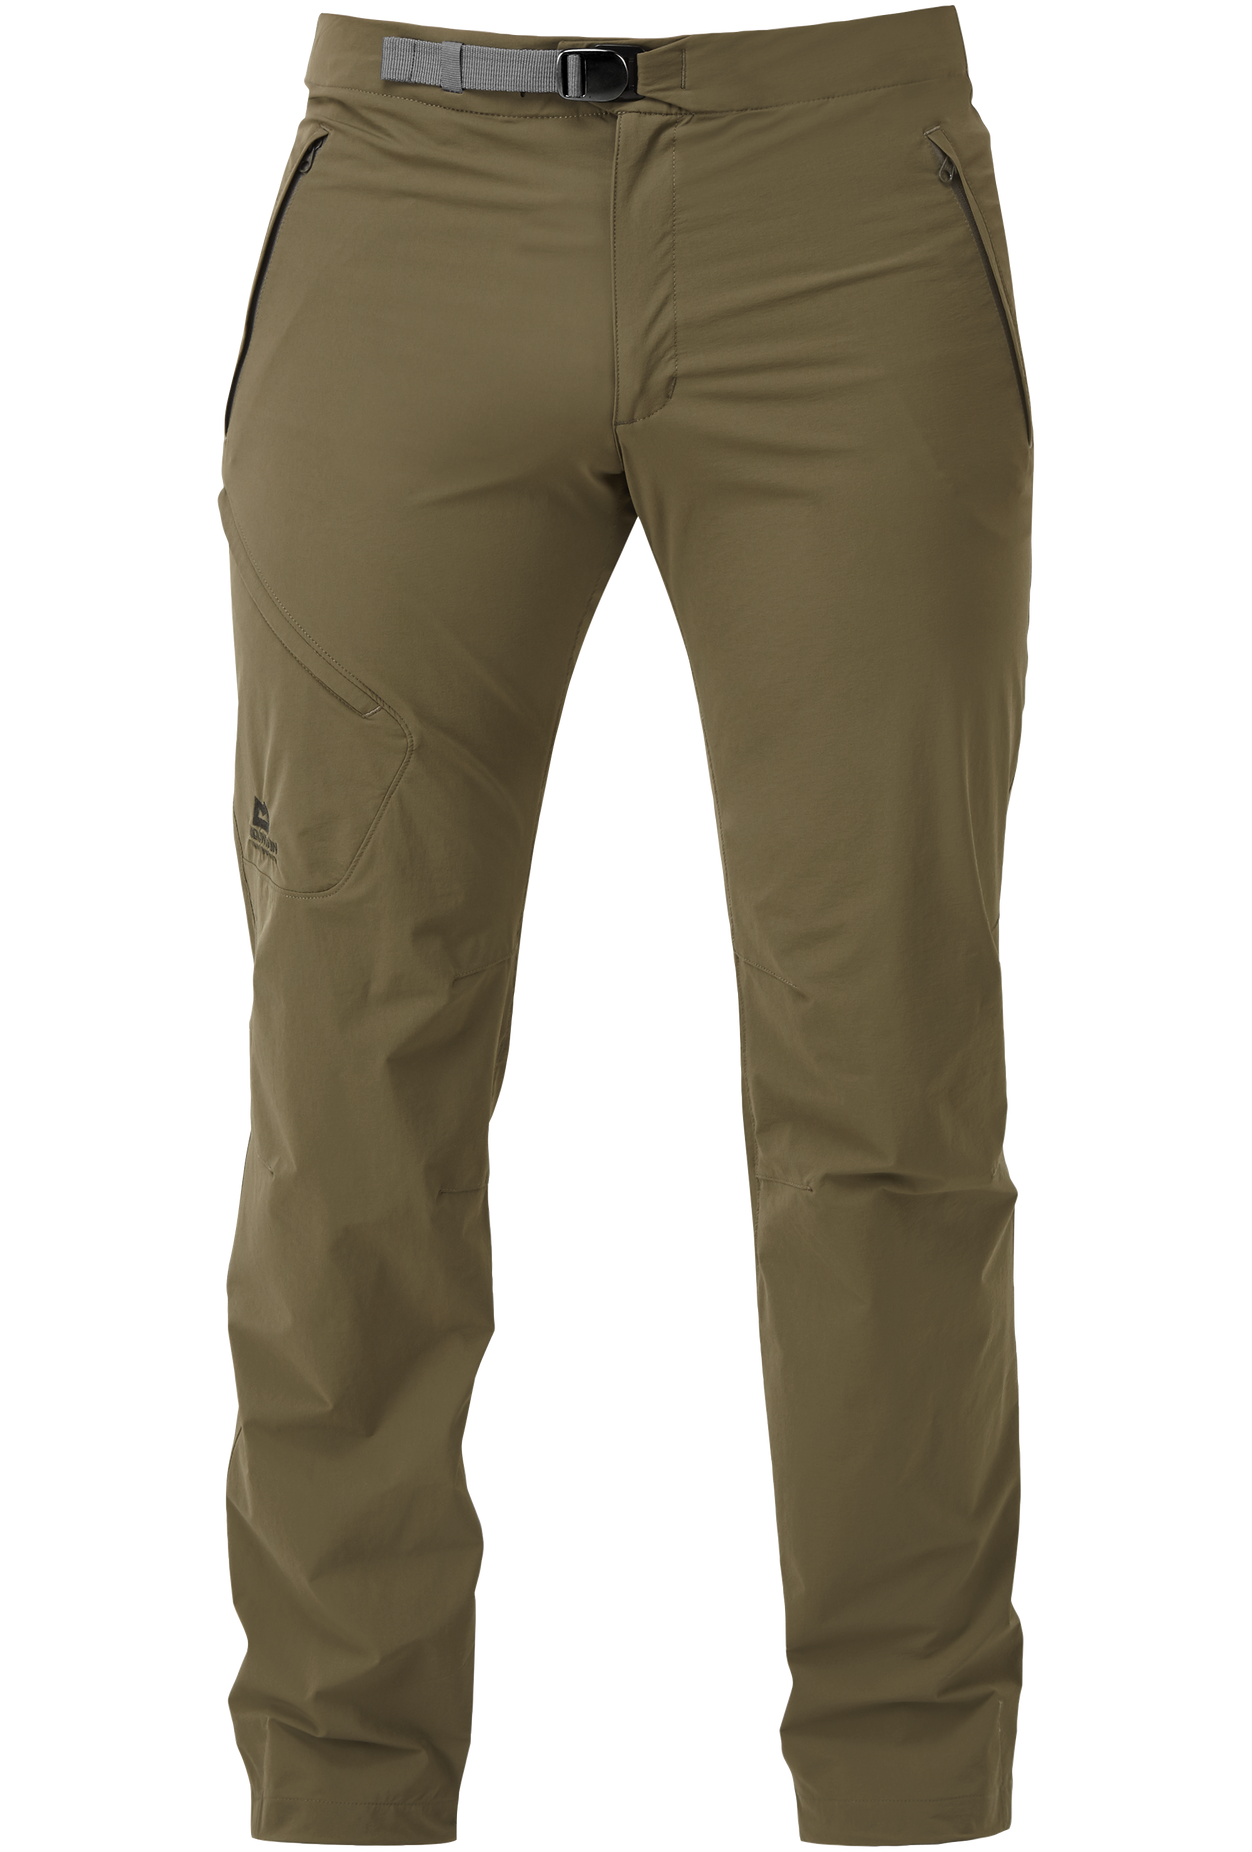 Mountain Equipment pánské softshellové kalhoty Comici Pant - zkrácené Barva: Mudstone, Velikost: 30/S